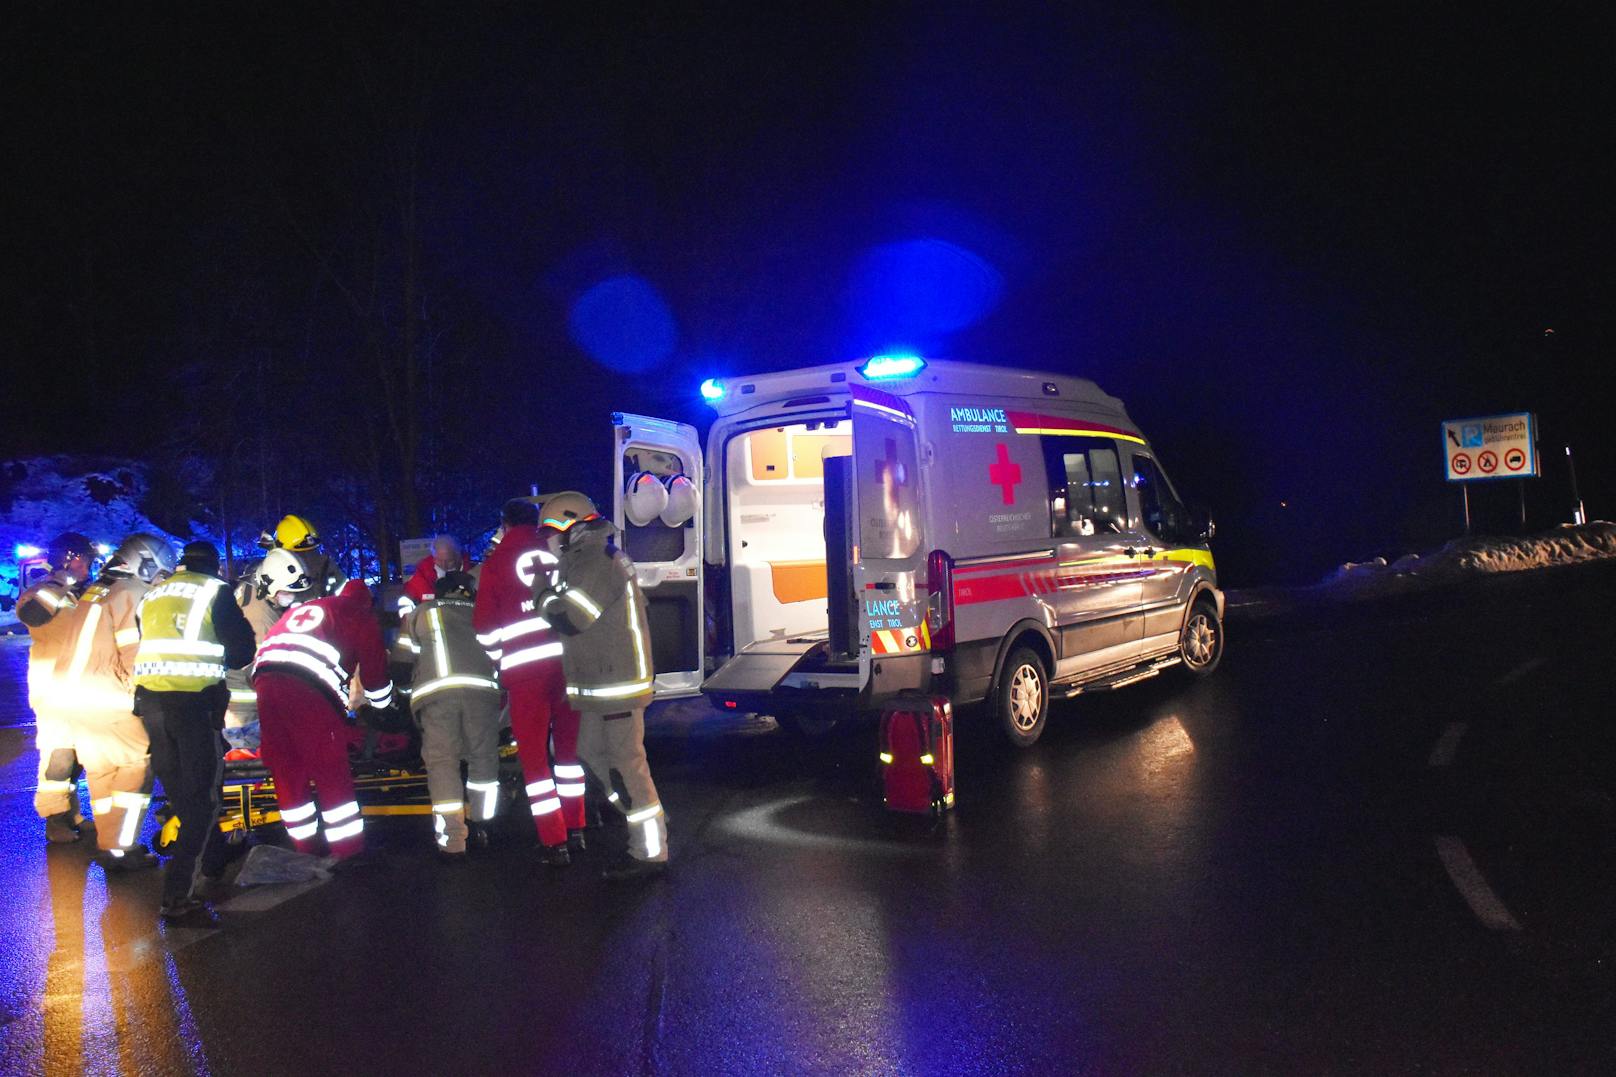 Spektakulärer Crash am Sonntagabend in Tirol: Ein Lenker verlor die Kontrolle über seinen BMW, kam von der Straße ab und durchbrach mehrere Bäume und Verkehrsschilder. Beide Insassen wurden schwer verletzt. 